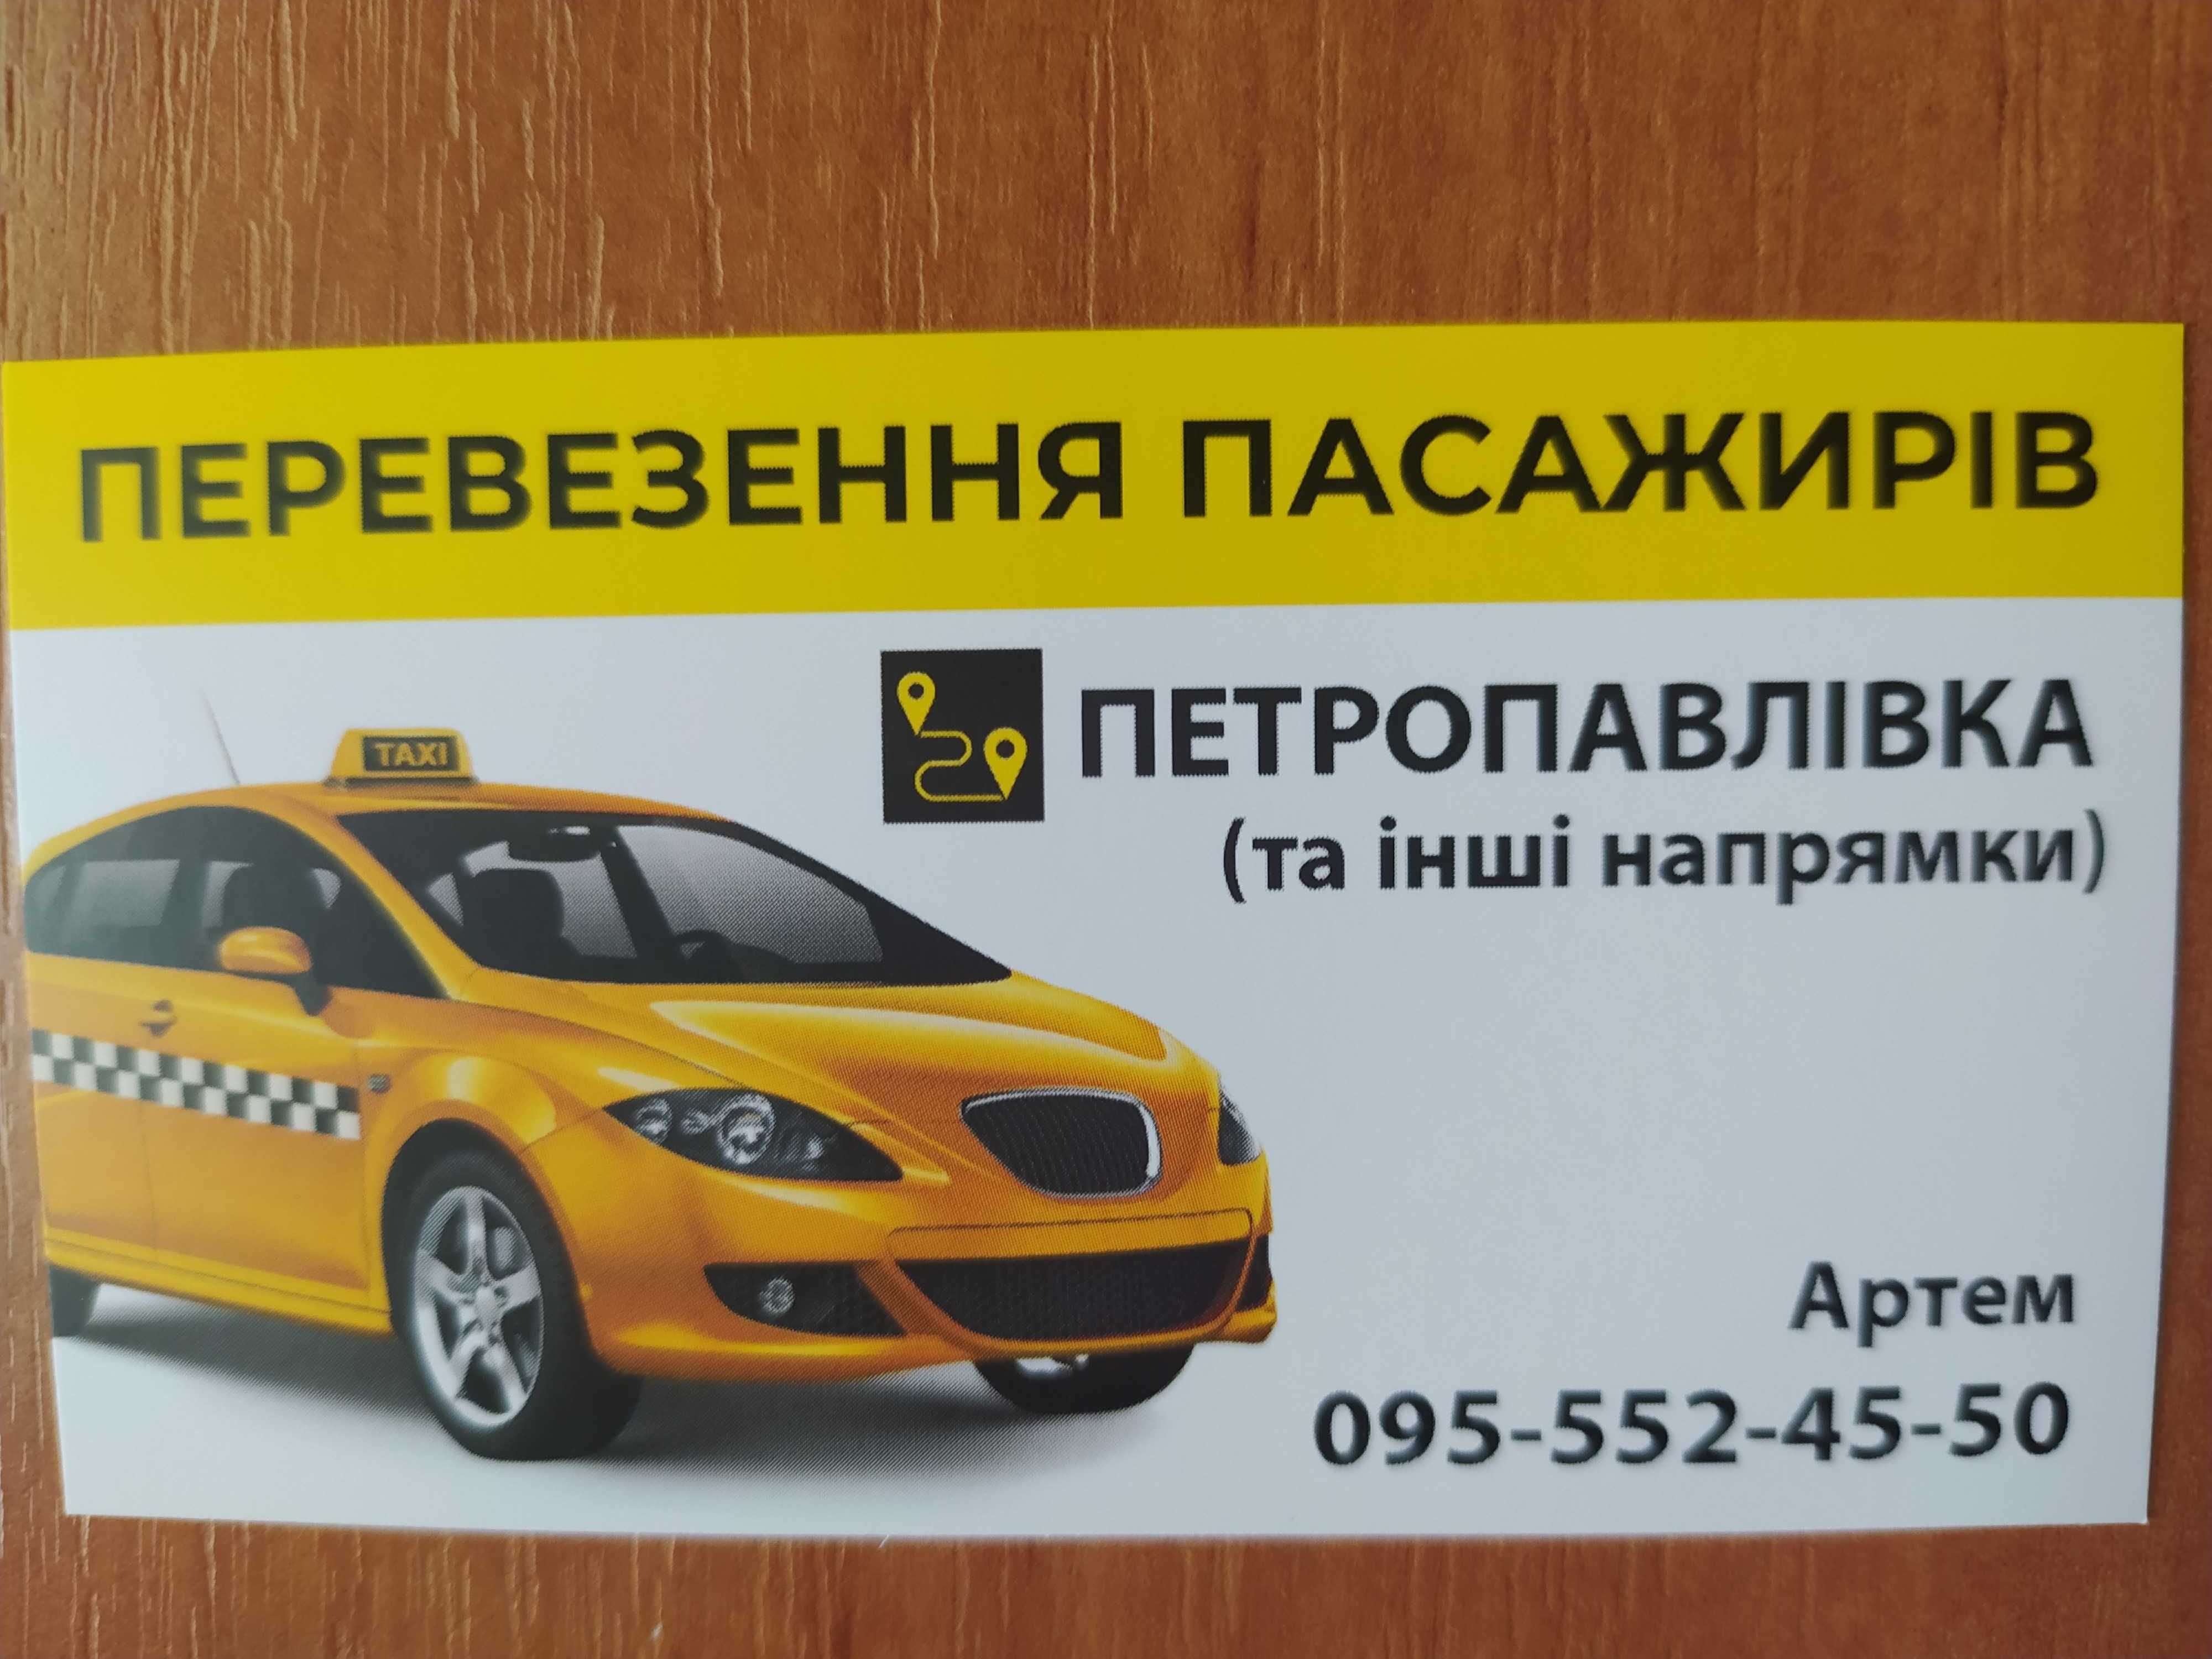 Таксі Петропавлівка, такси